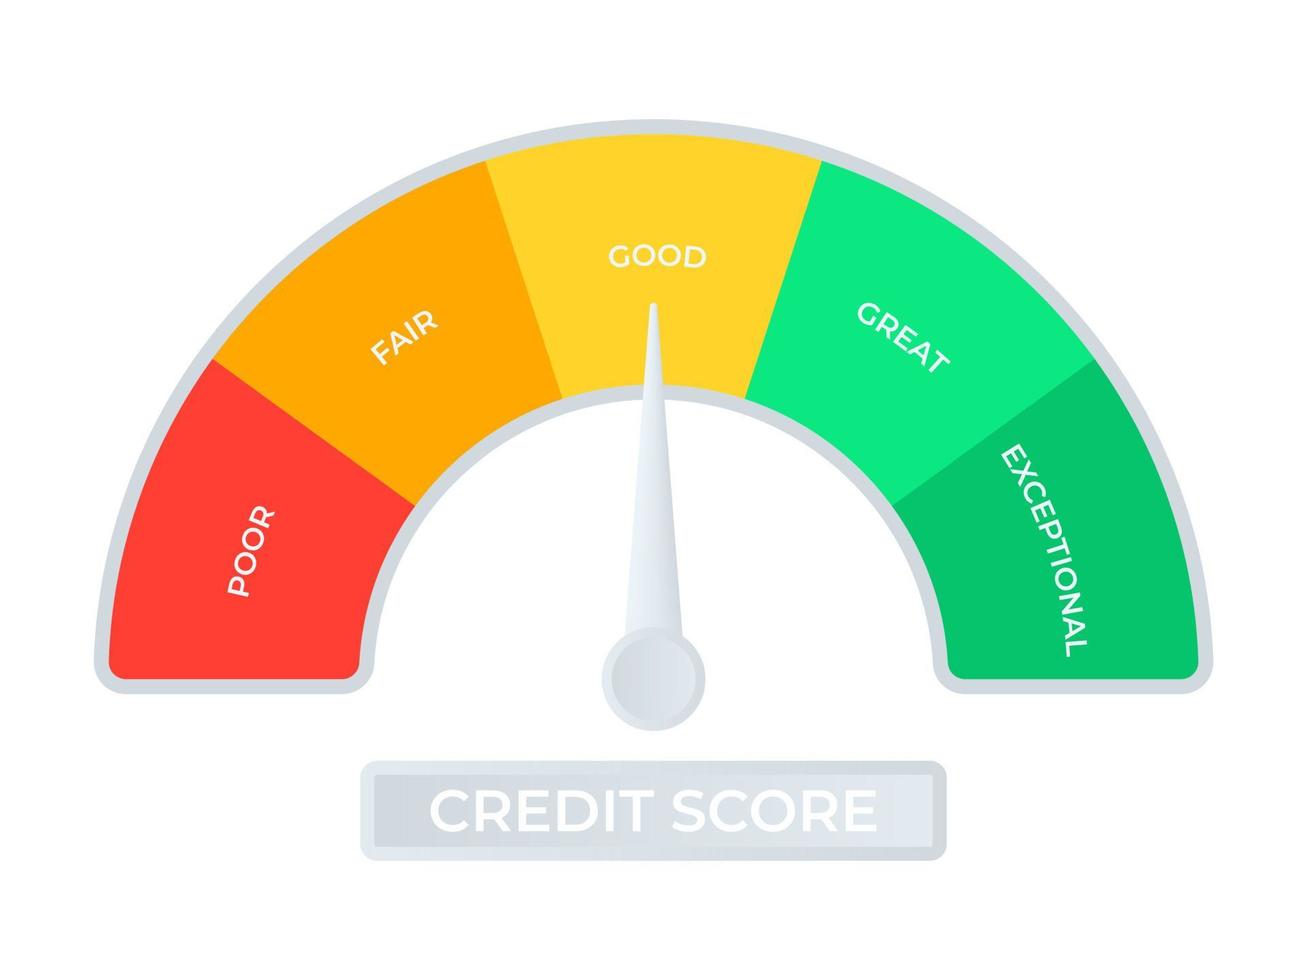 kreditpoängskala. en indikator för att mäta goda och dåliga kreditbetyg. vektor illustration.